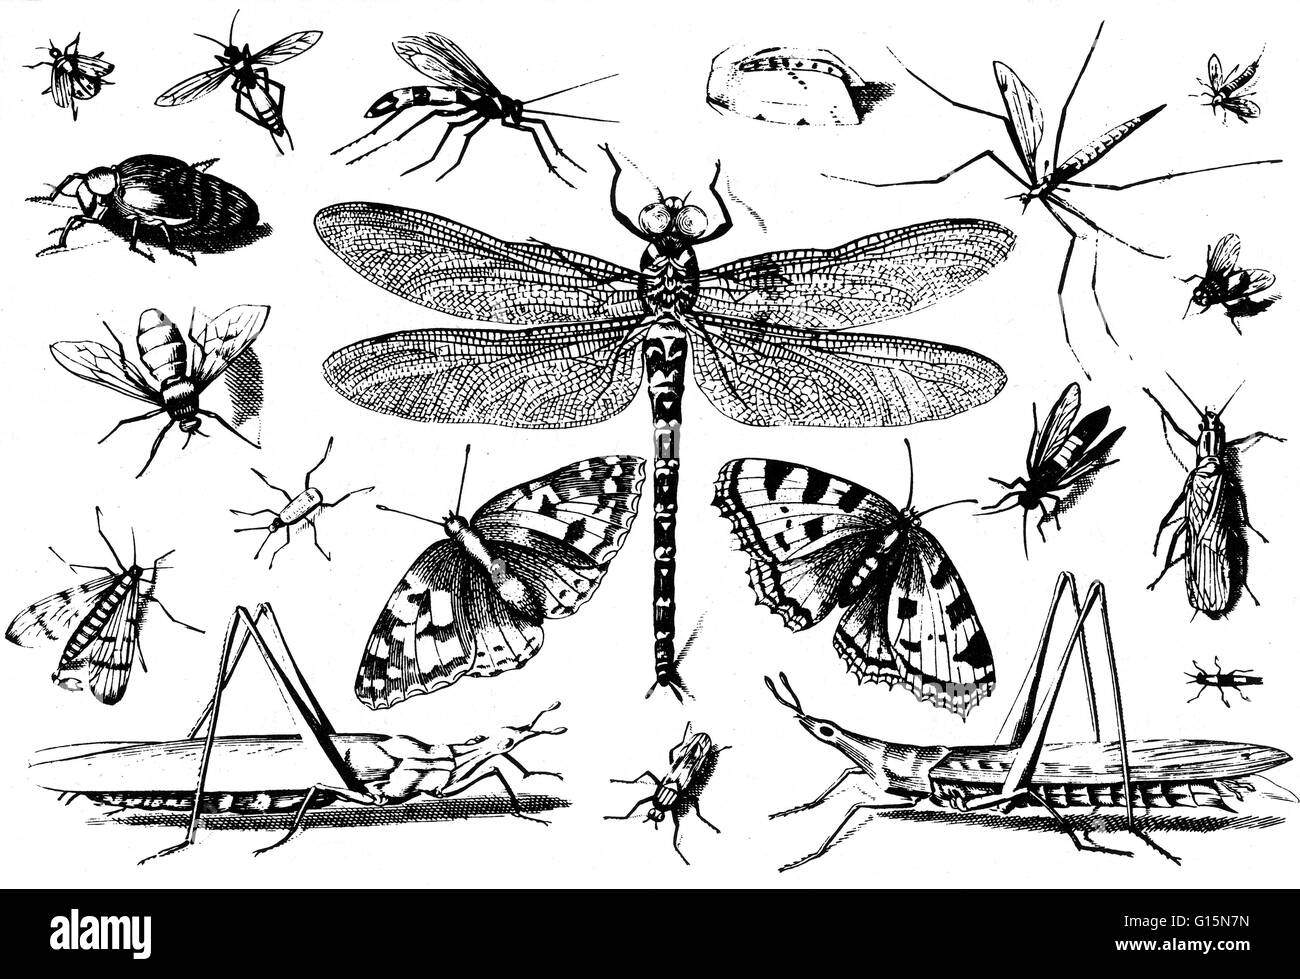 Gli insetti. Jacob Hoefnagel incisione da George Hoefnagel Archetypa del 1630. Gli insetti sono una classe di invertebrati entro il phylum artropodi che hanno un esoscheletro chitinous, una tre-parte corpo (testa, torace e addome), tre coppie di gambe snodate, compo Foto Stock